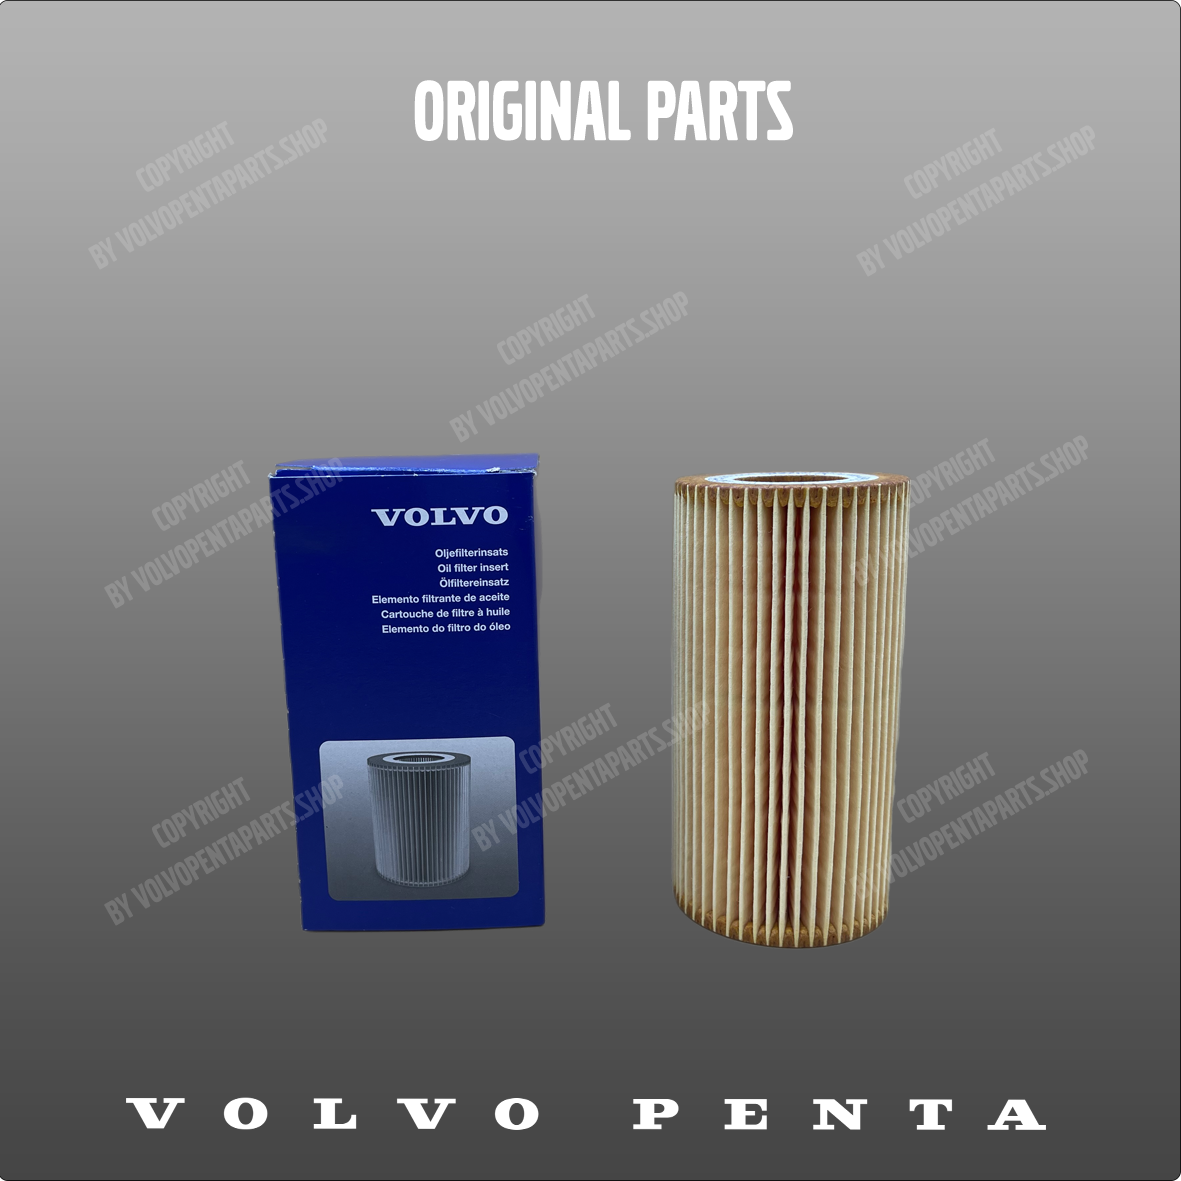 Volvo Penta oil filter kit 30788490